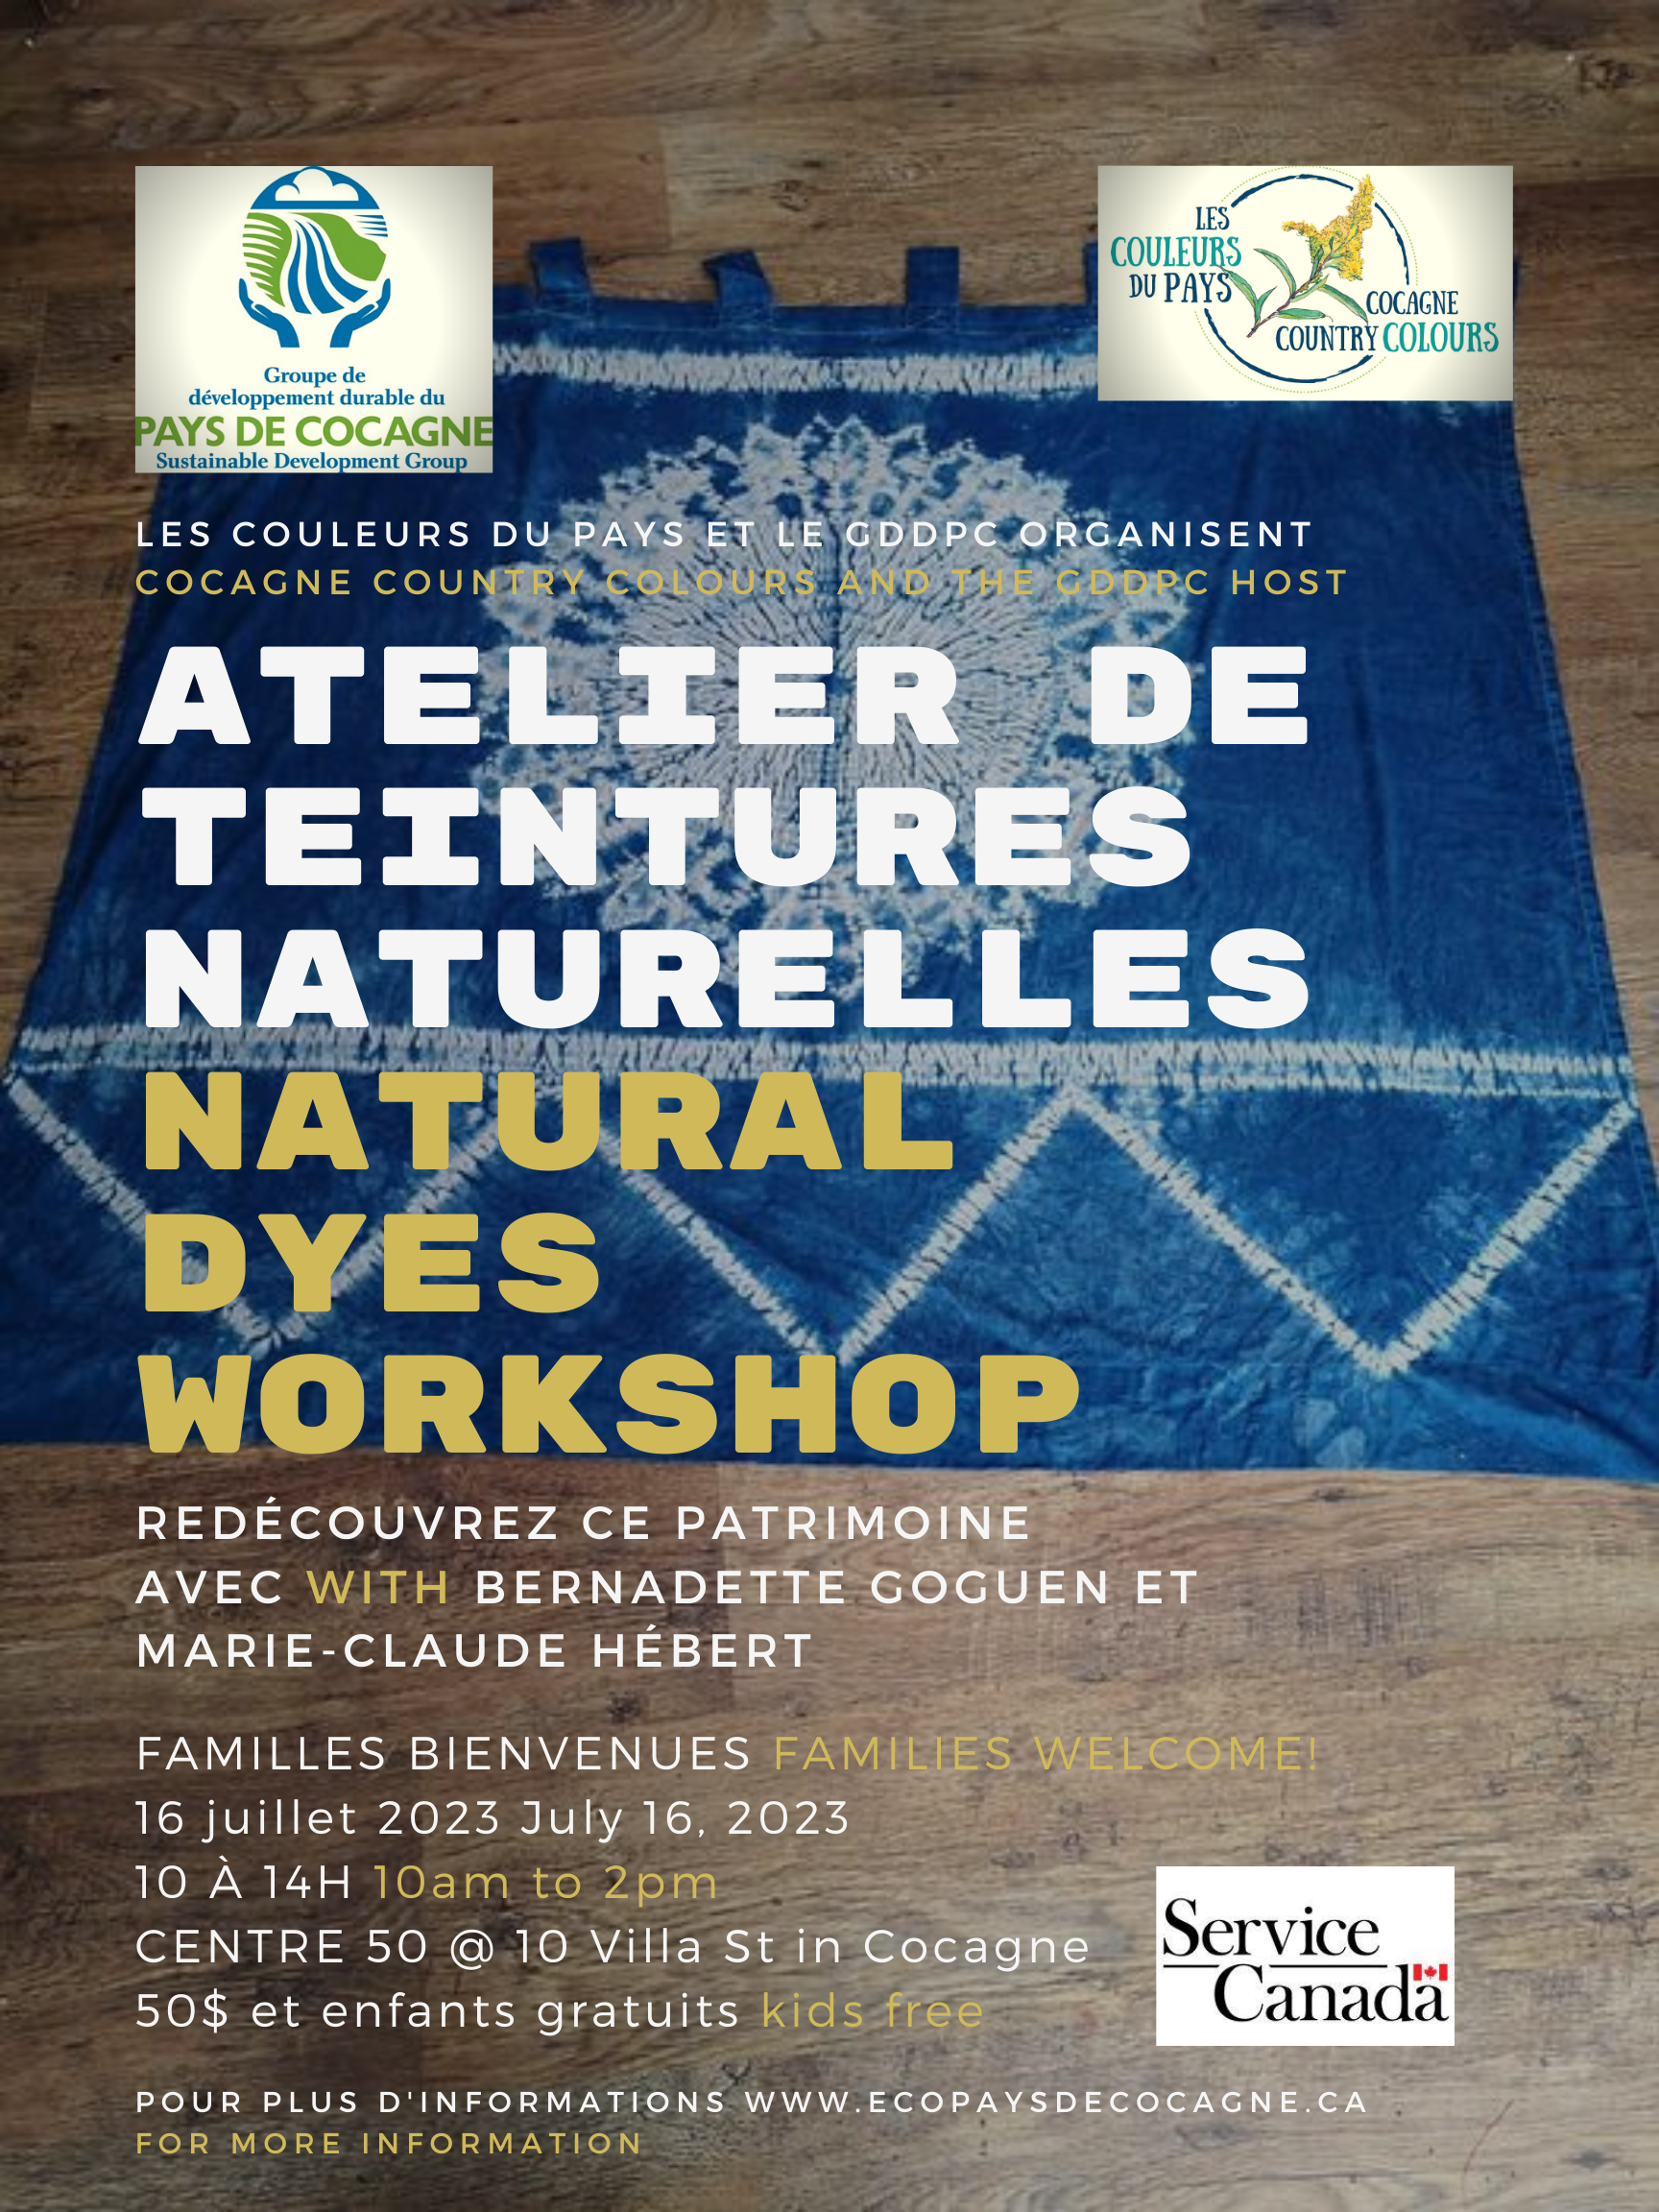 Atelier de teintures naturelles Natural dyes workshop